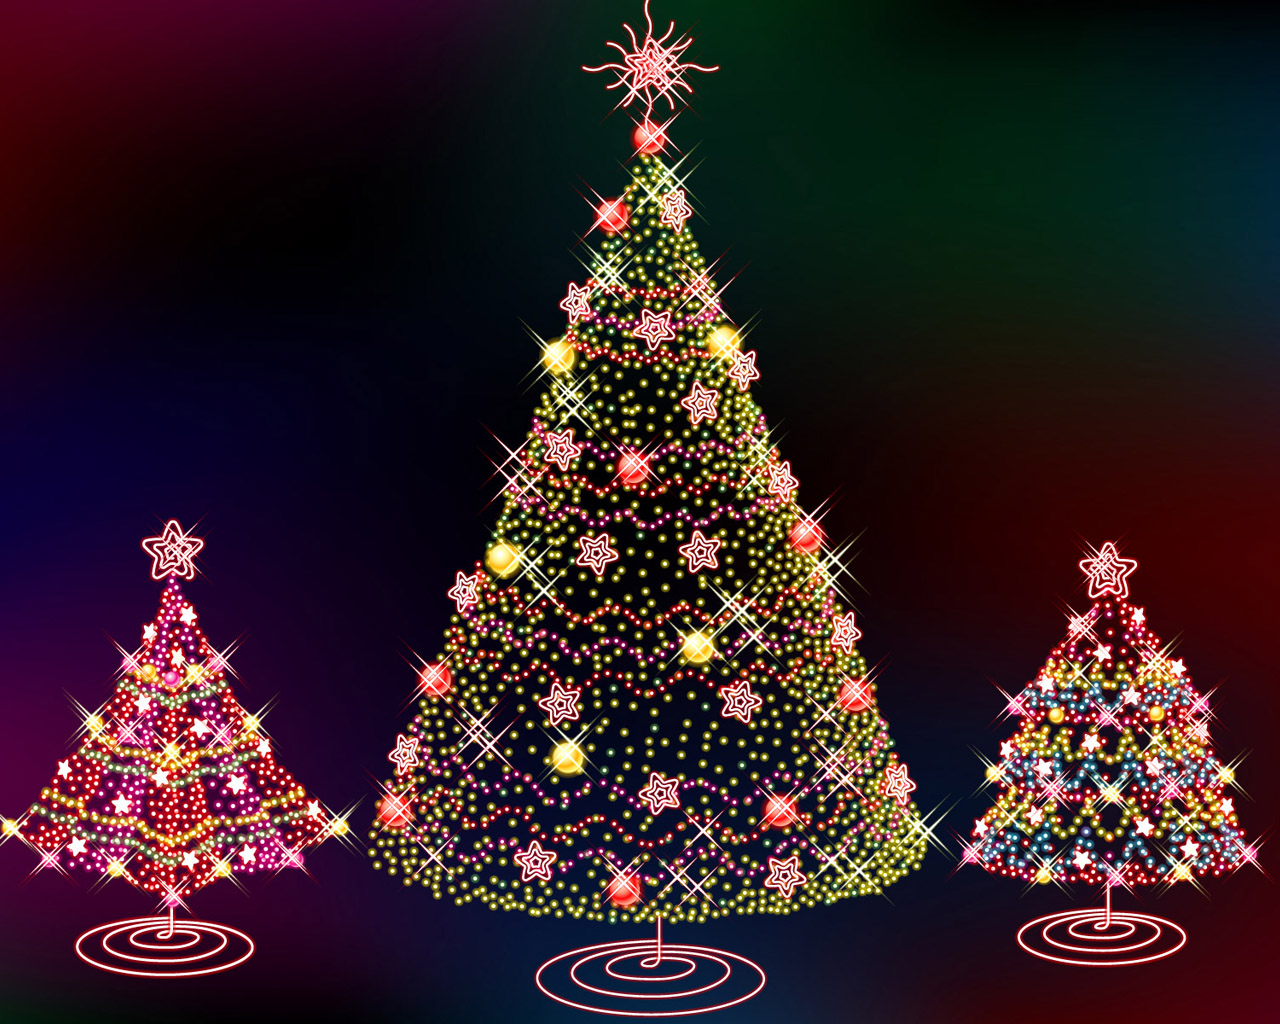 http://3.bp.blogspot.com/-pM2MnBd1WEY/UM7FMdvvrhI/AAAAAAAAN5E/FYnIjvJbOpk/s1600/Free+Christmas+HD+Wallpapers+35.jpg